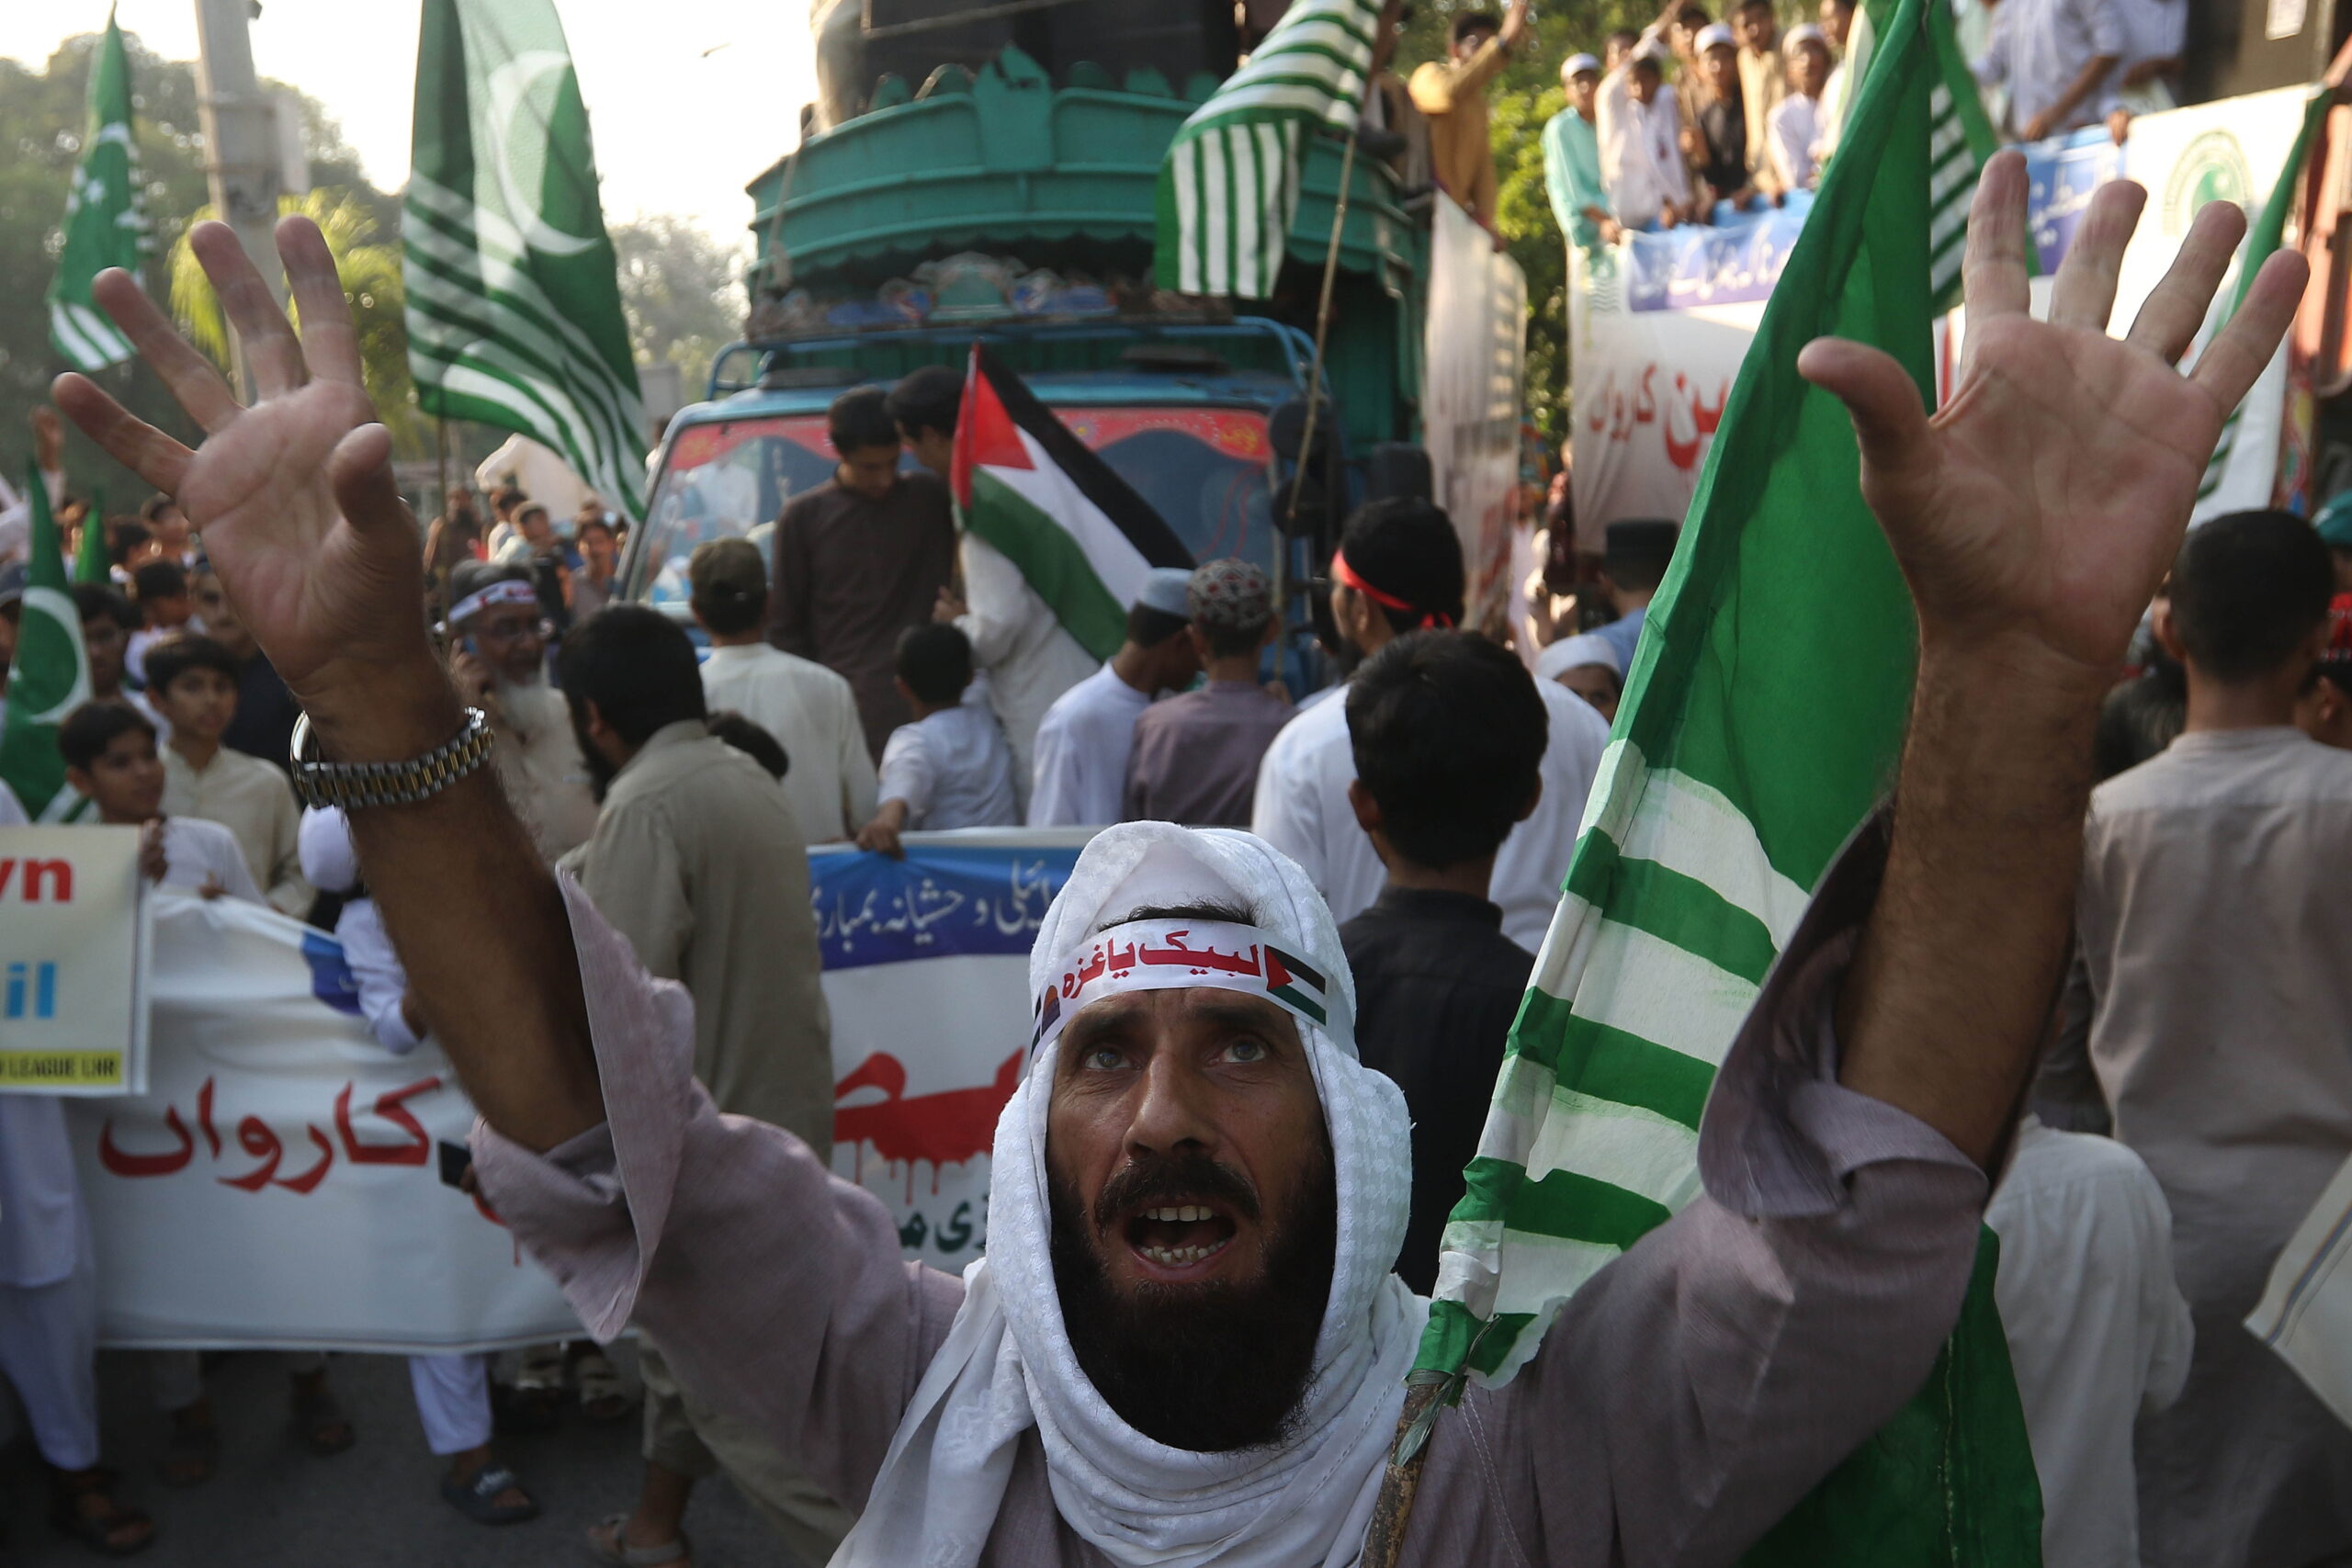 διαδήλωση στο Πακιστάν υπέρ των Παλαιστινίων